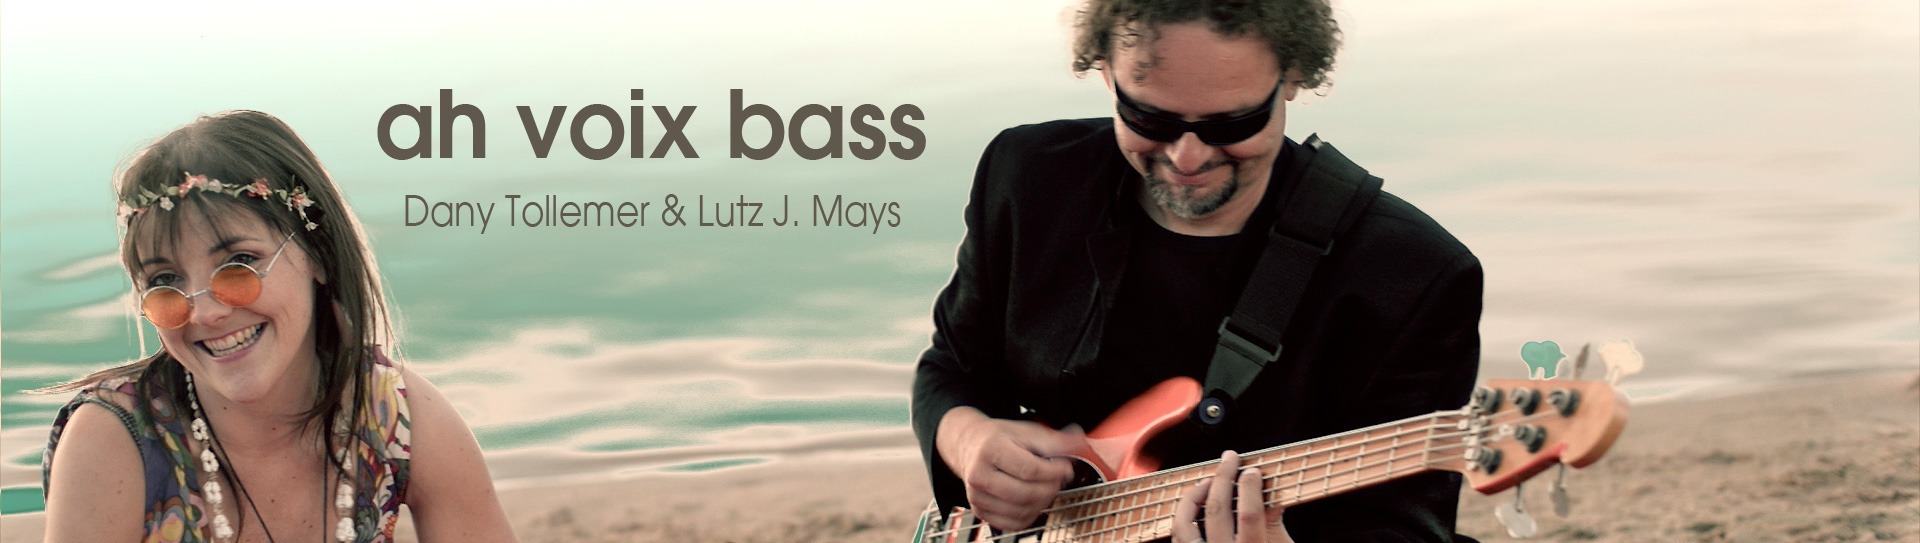 ah voix bass - Dany Tollemer und Lutz J. Mays